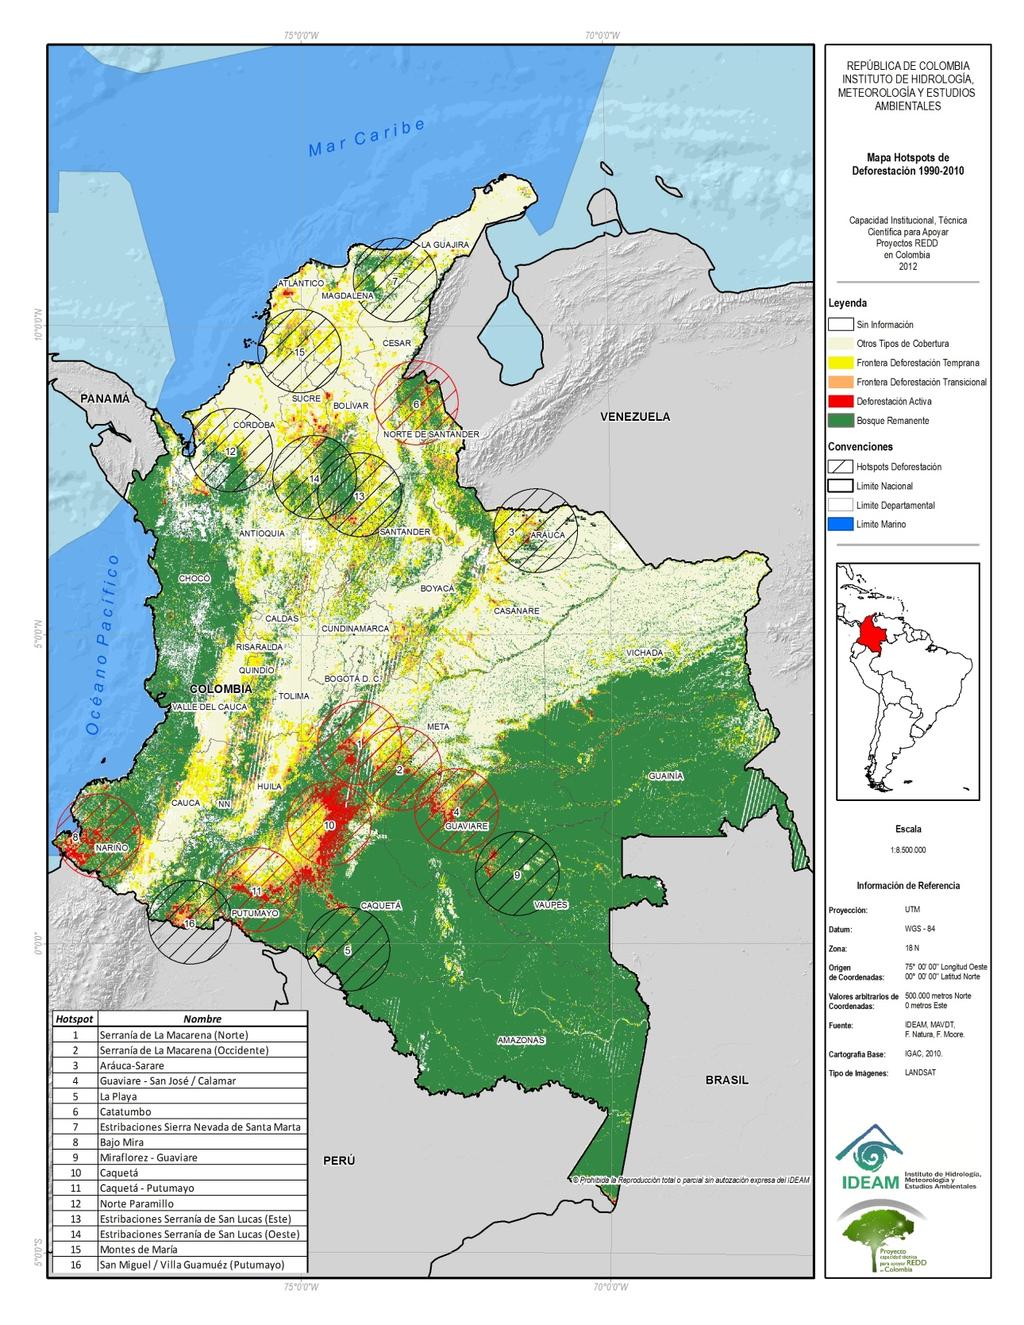 Deforestación media anual Periodo 1990-2010 310,000 ha/año 1 y 2 Serranía de la Macarena 3 Arauca- Sarare 4 Guaviare San José Calamar 5 La Paya 6 Catatumbo 7 Sierra Nevada 8 Bajo Mira 9 Miraflores